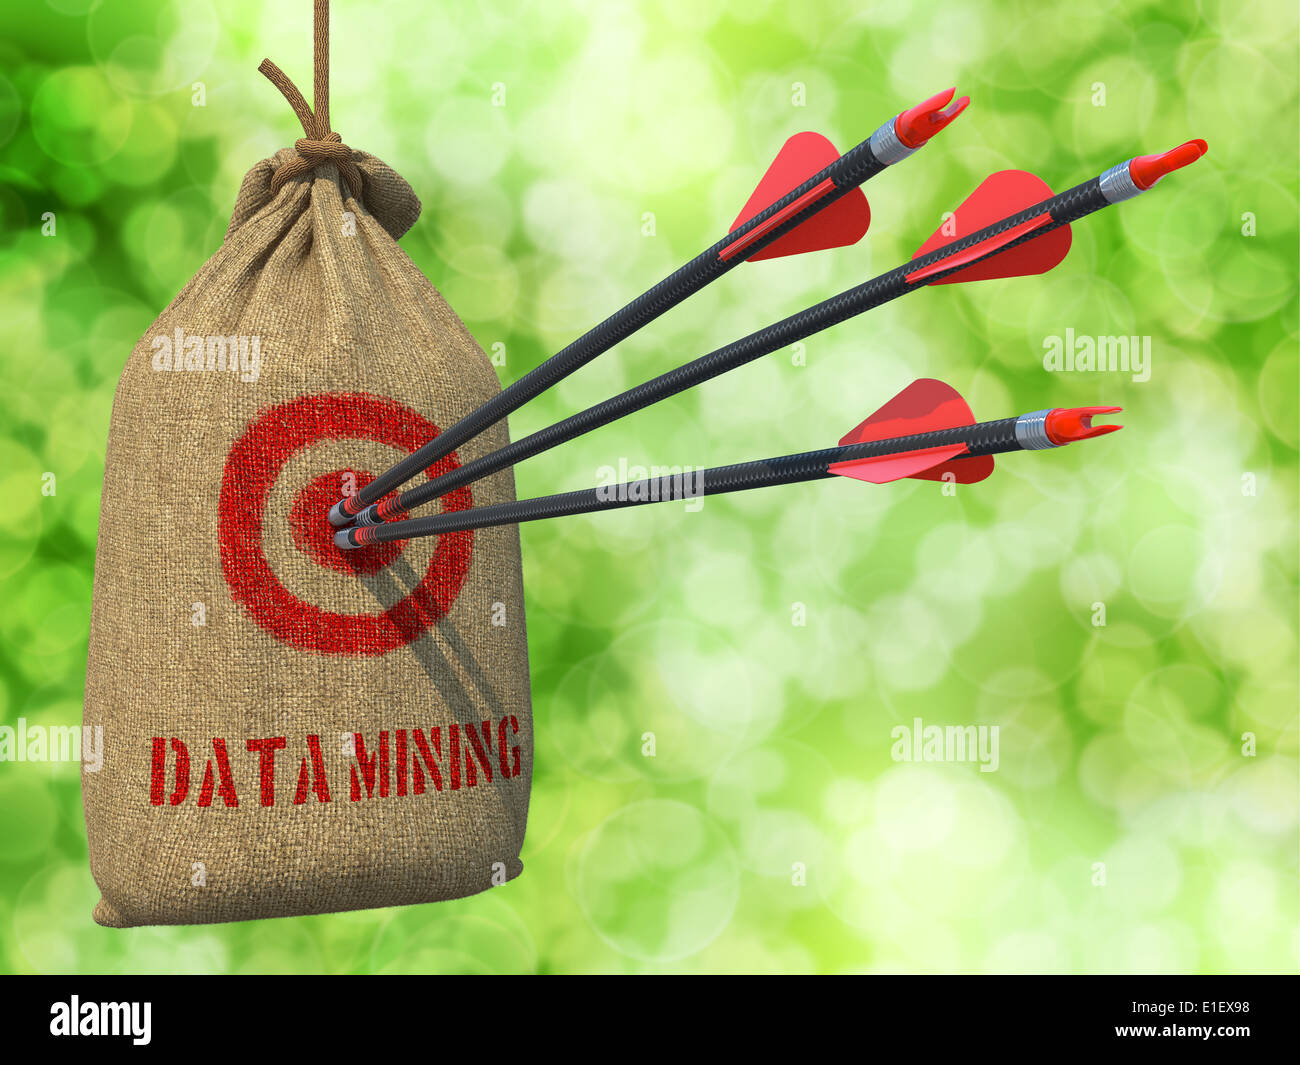 Data Mining - Tre frecce ha colpito in rosso sul bersaglio appeso un sacco sul verde sfondo bokeh di fondo. Foto Stock